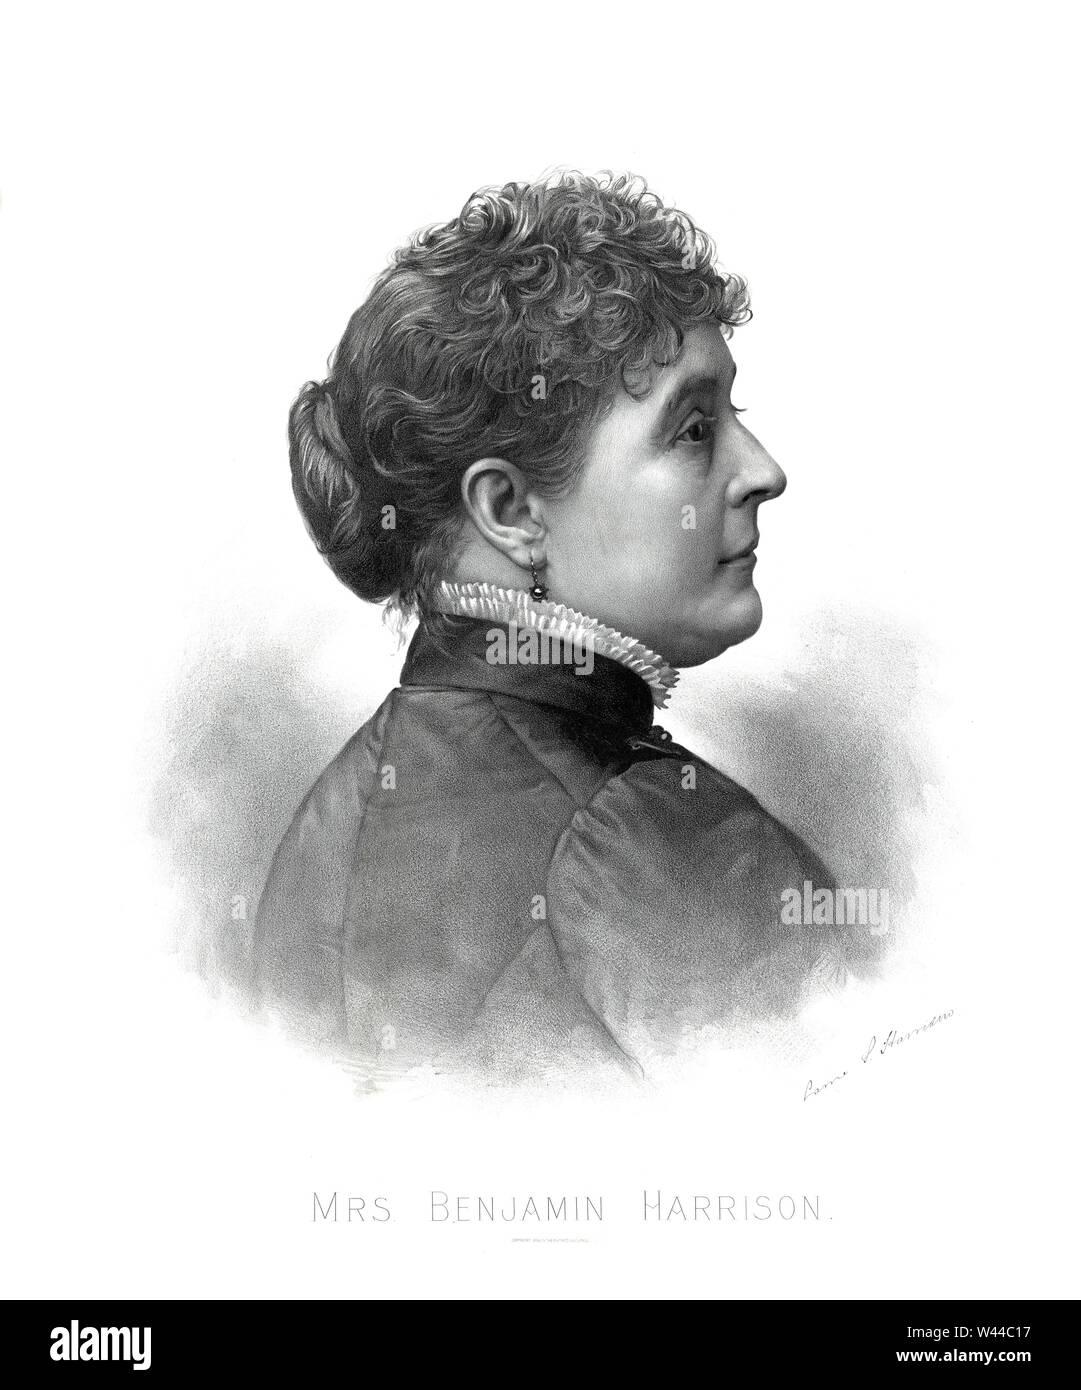 Caroline Harrison (1832-92), First Lady der Vereinigten Staaten von 1889-92, als Frau von US-Präsident Benjamin Harrison, Illustration, Bufford's Sohn Lith. Co., 1888 Stockfoto